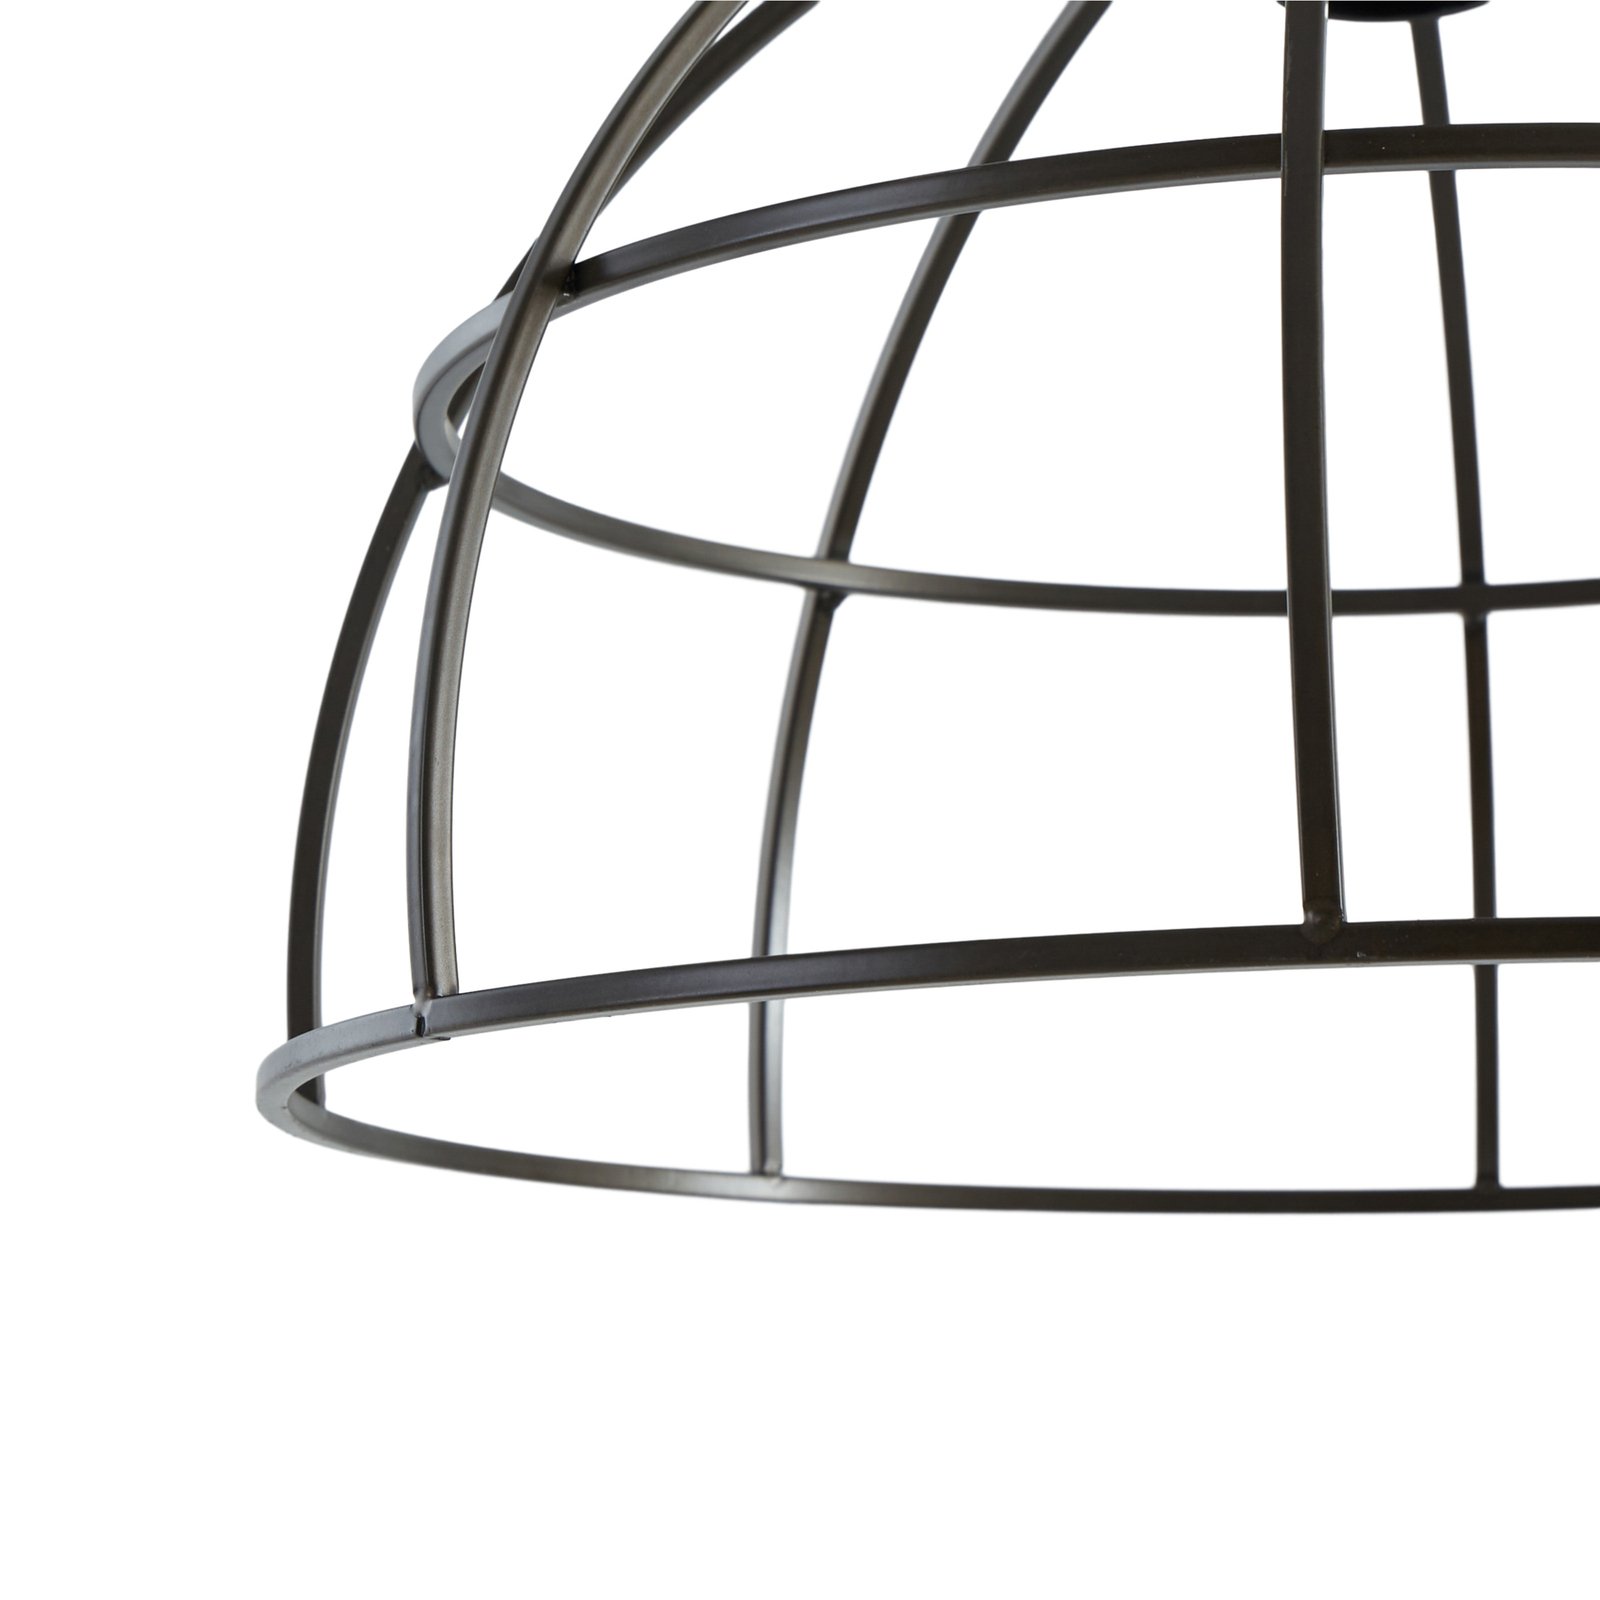 Lucande pendant light Arinthea, E27, black, steel, cage